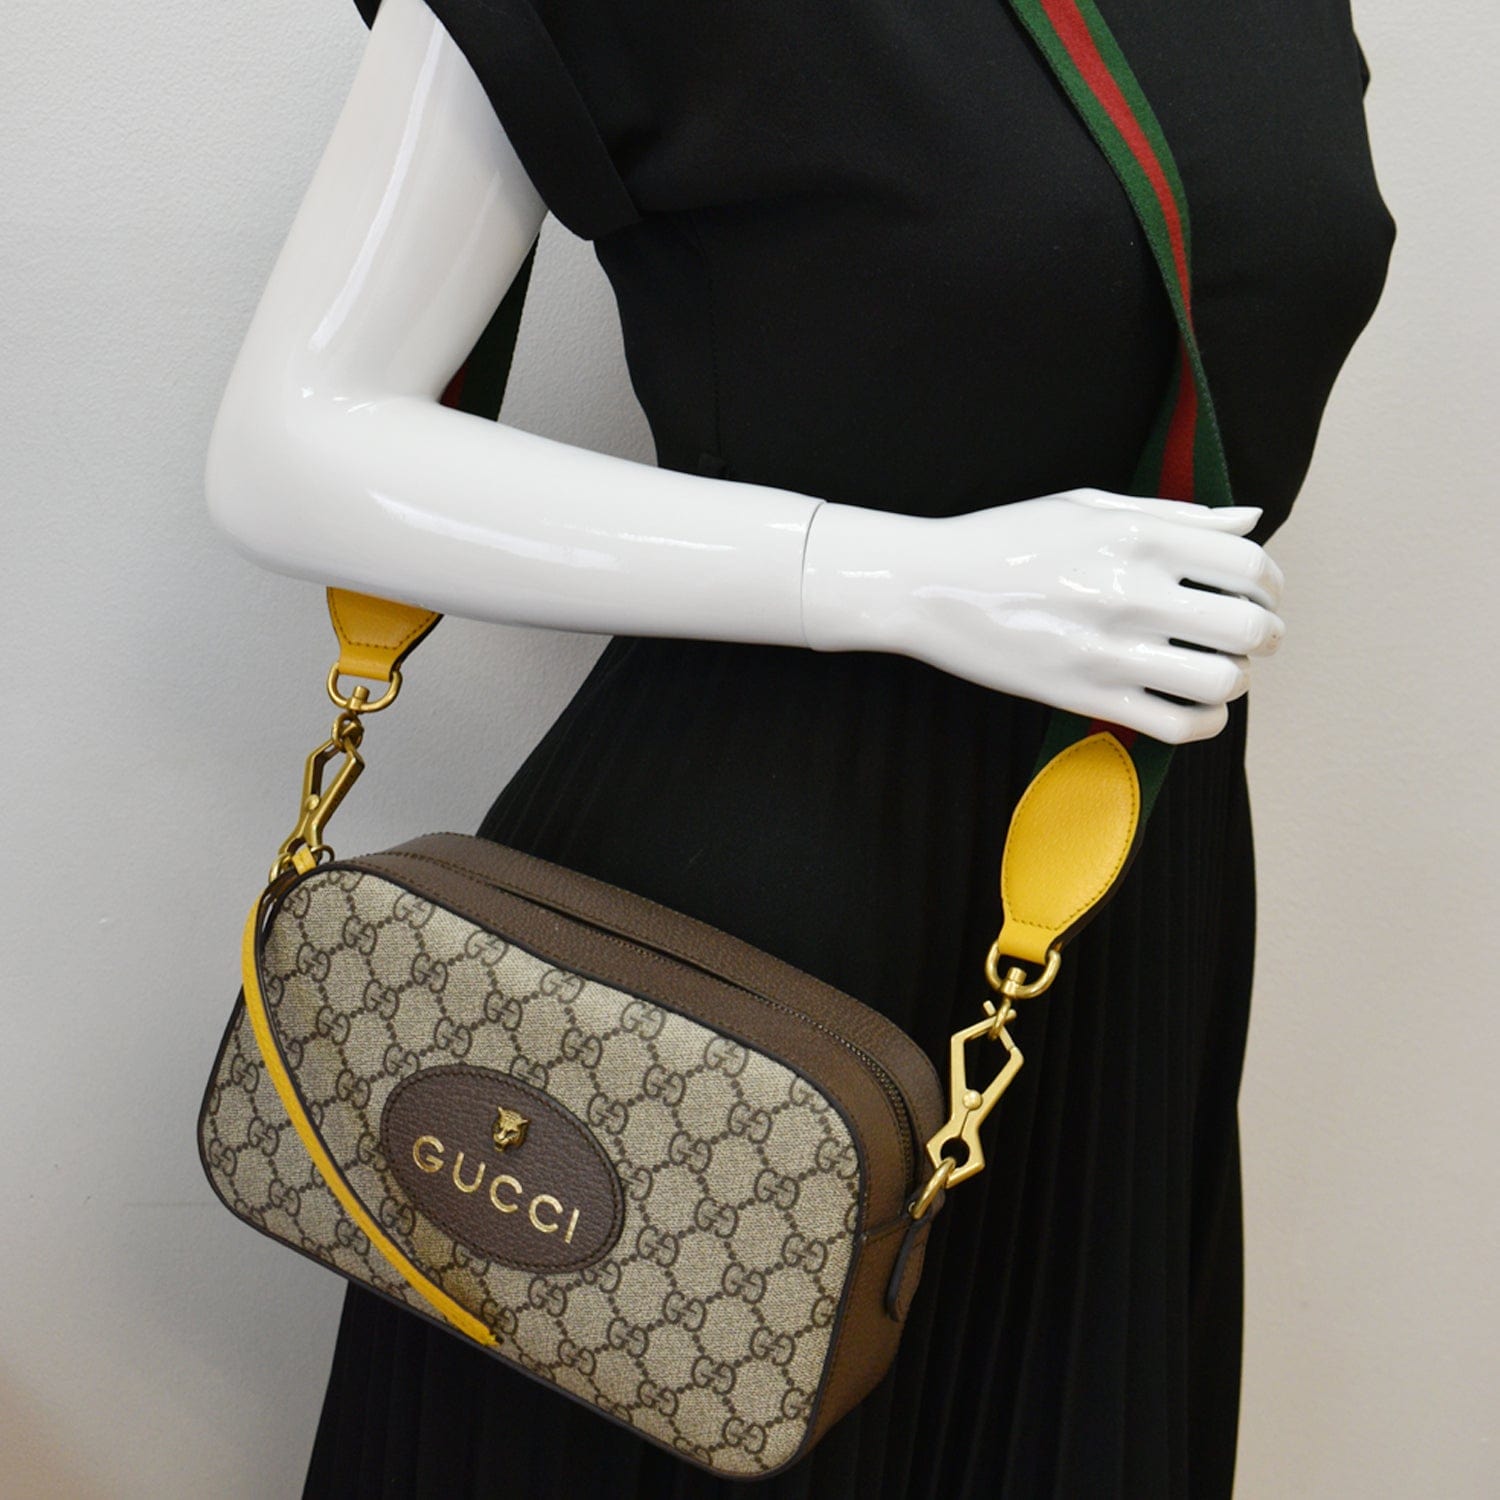 Gucci GG Supreme Neo Vintage Messenger Crossbody Bag,Beige